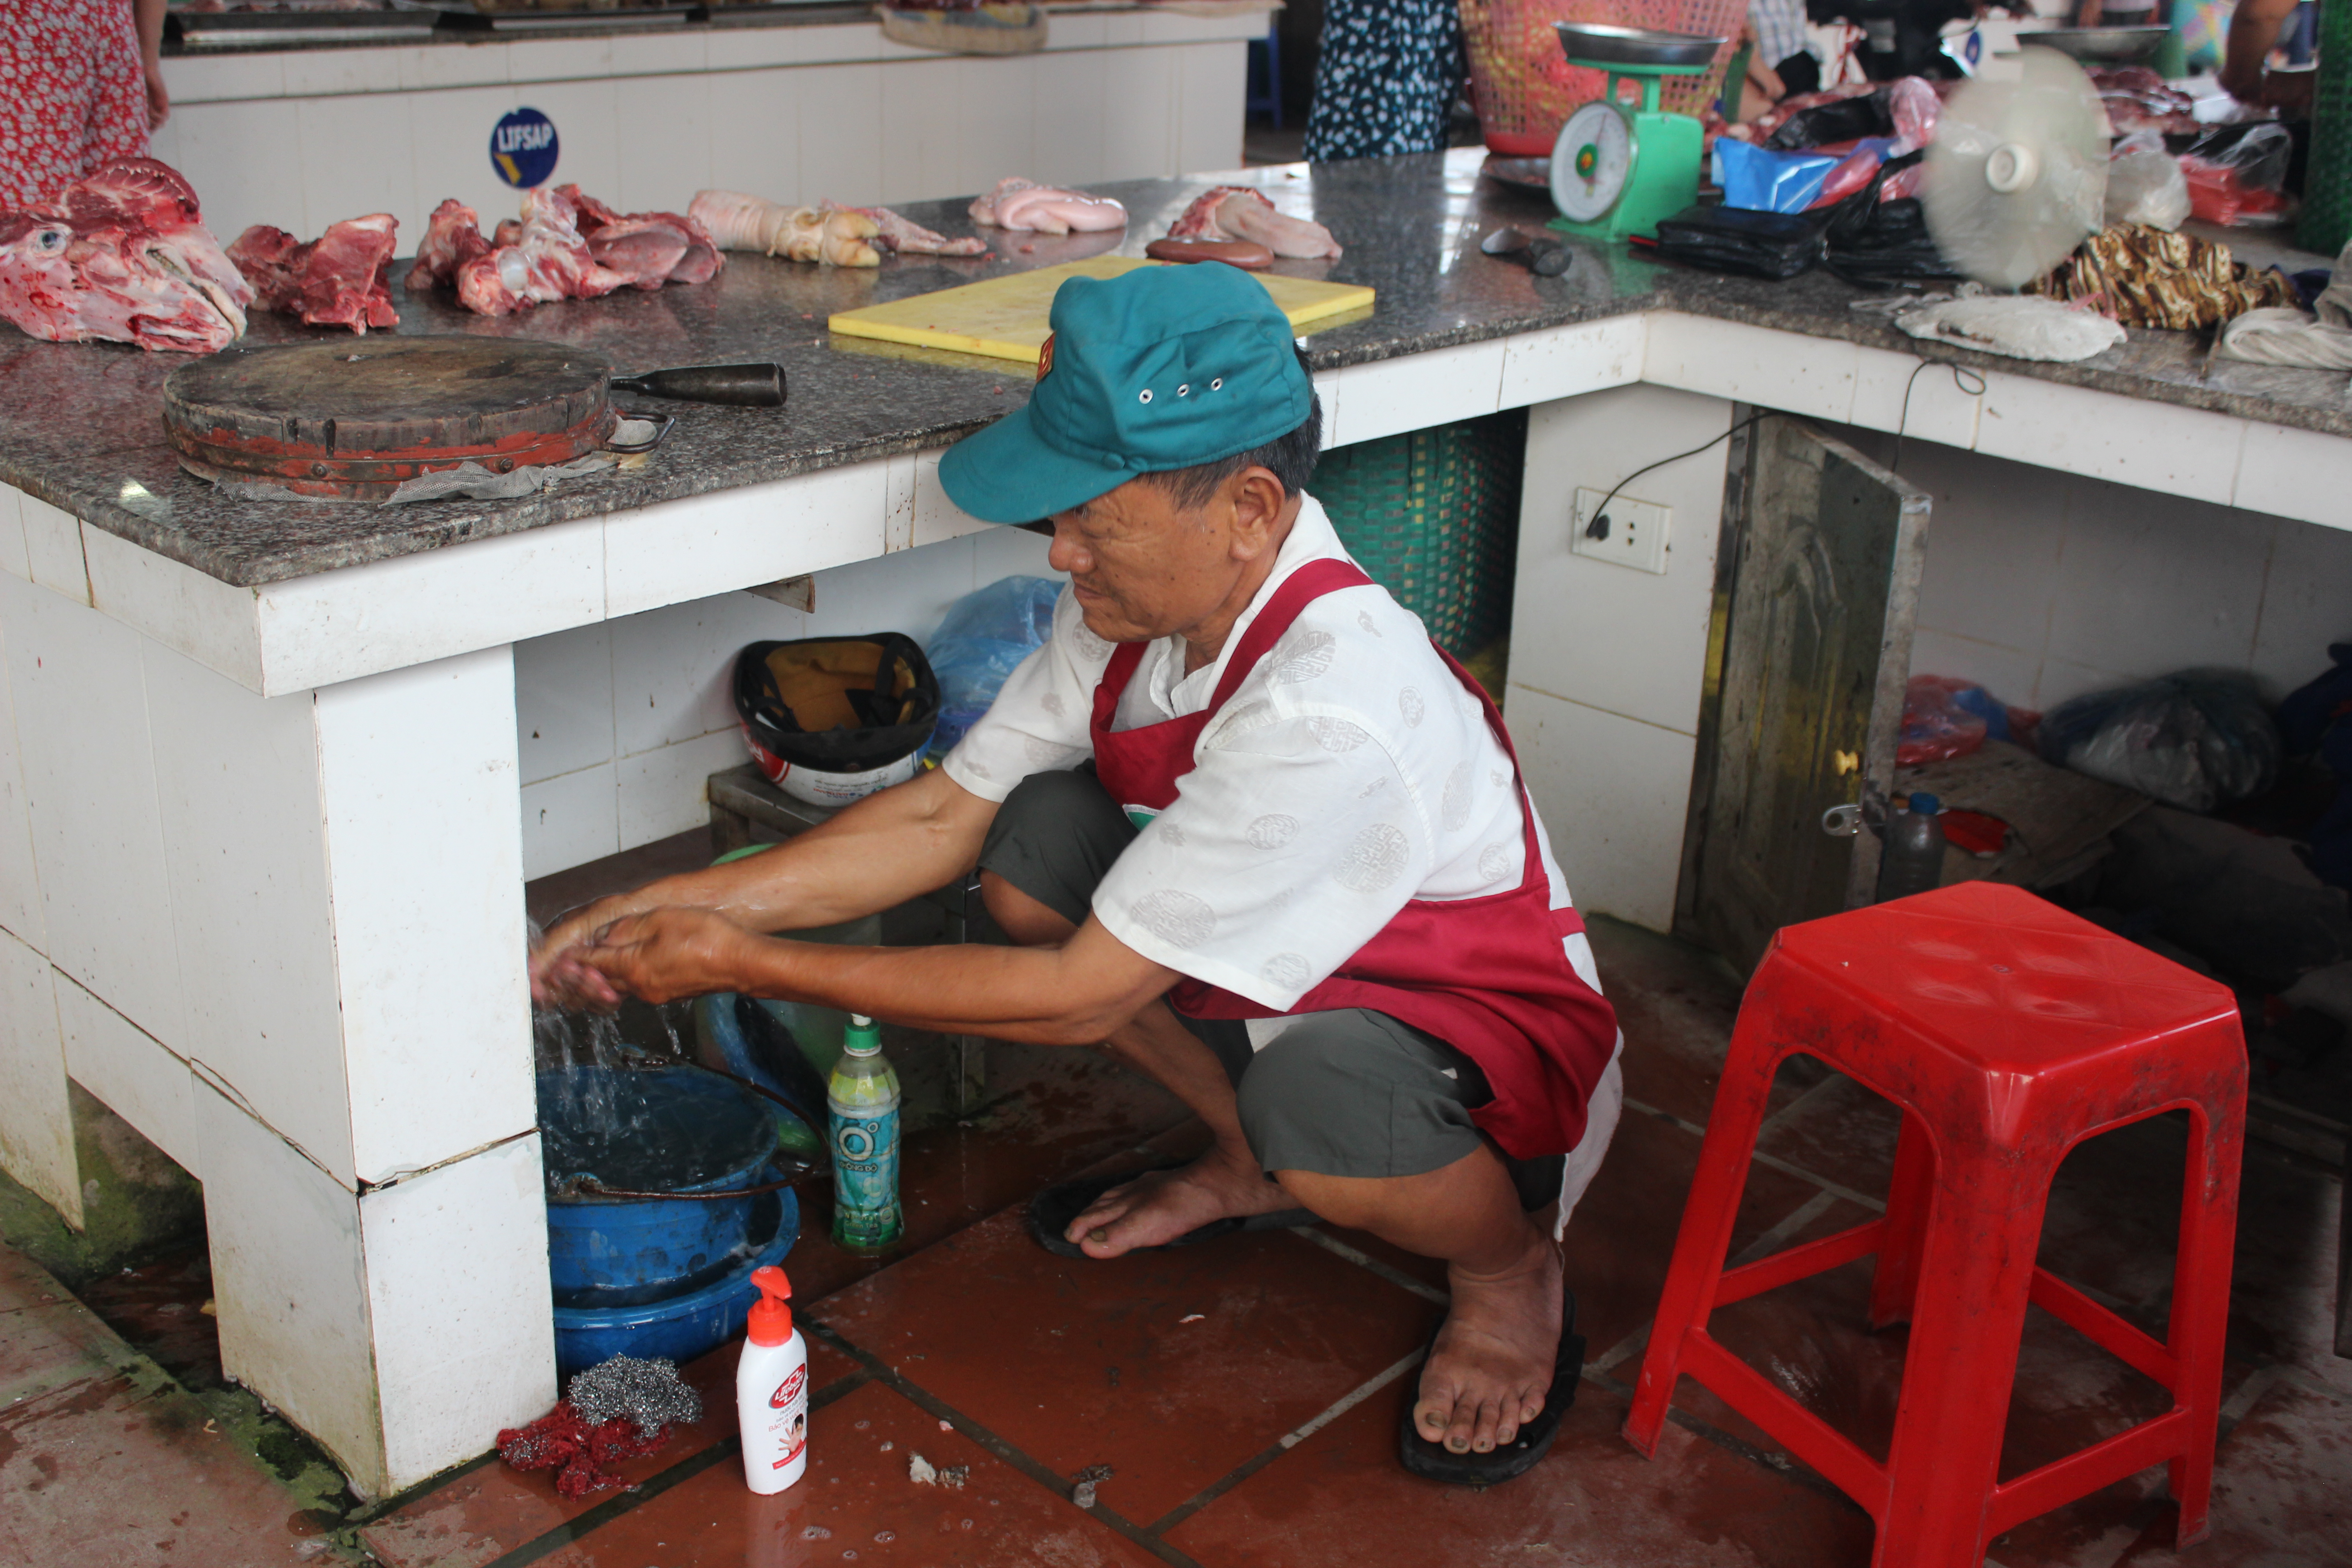 A pork retailer in Vietnam washes their hands